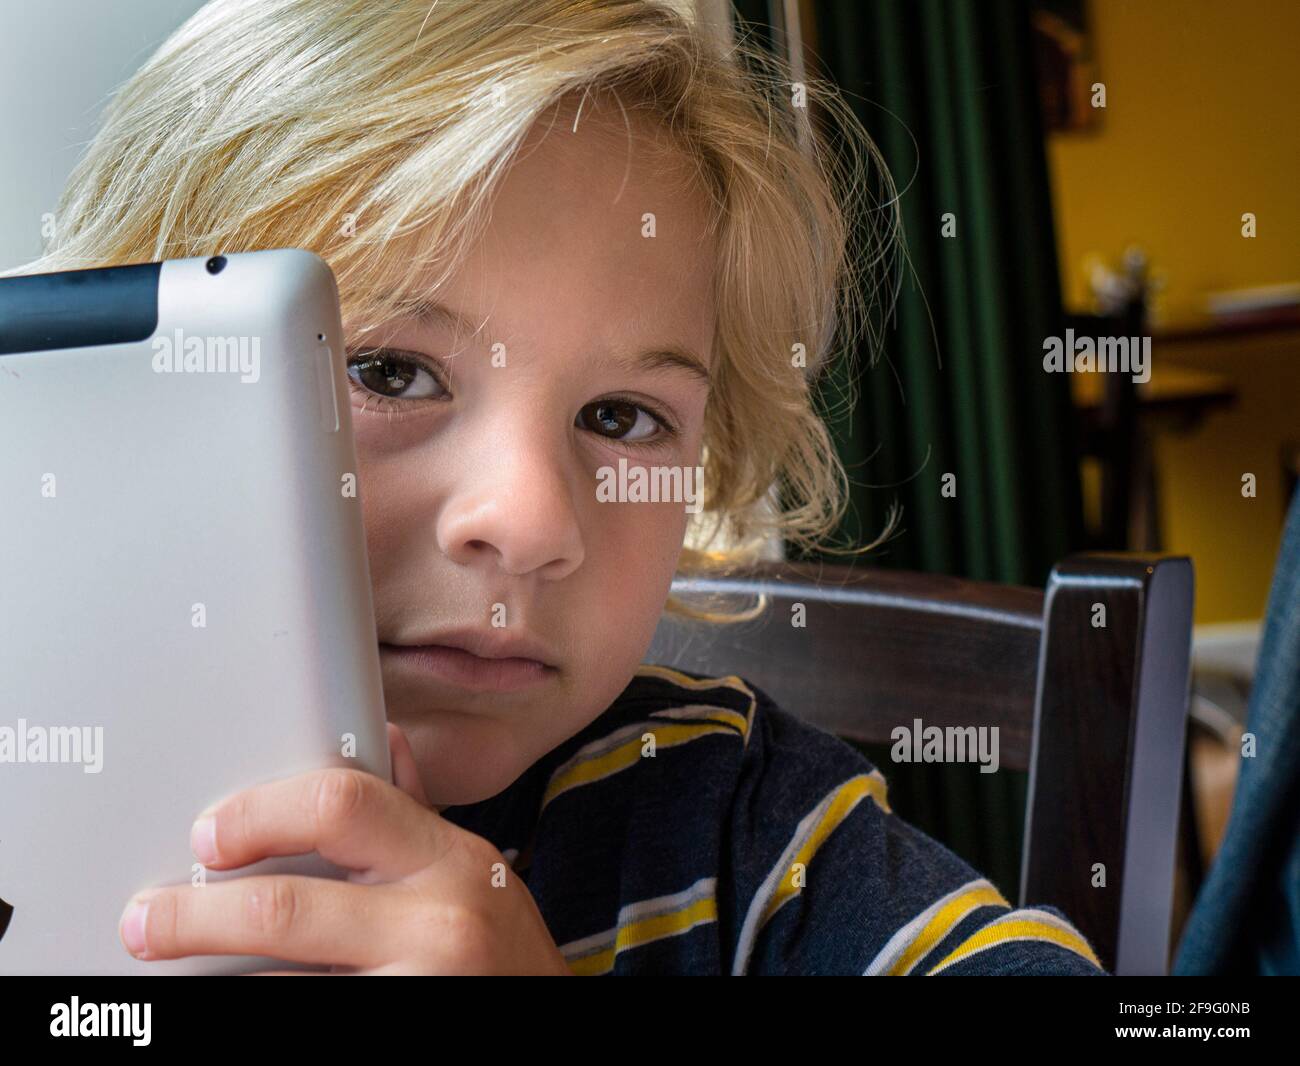 Bebé rubio niño 4-6 años de compañeros inocentemente alrededor de su inteligente Tablet iPad ordenador en casa/escuela interior situación de aprendizaje Foto de stock